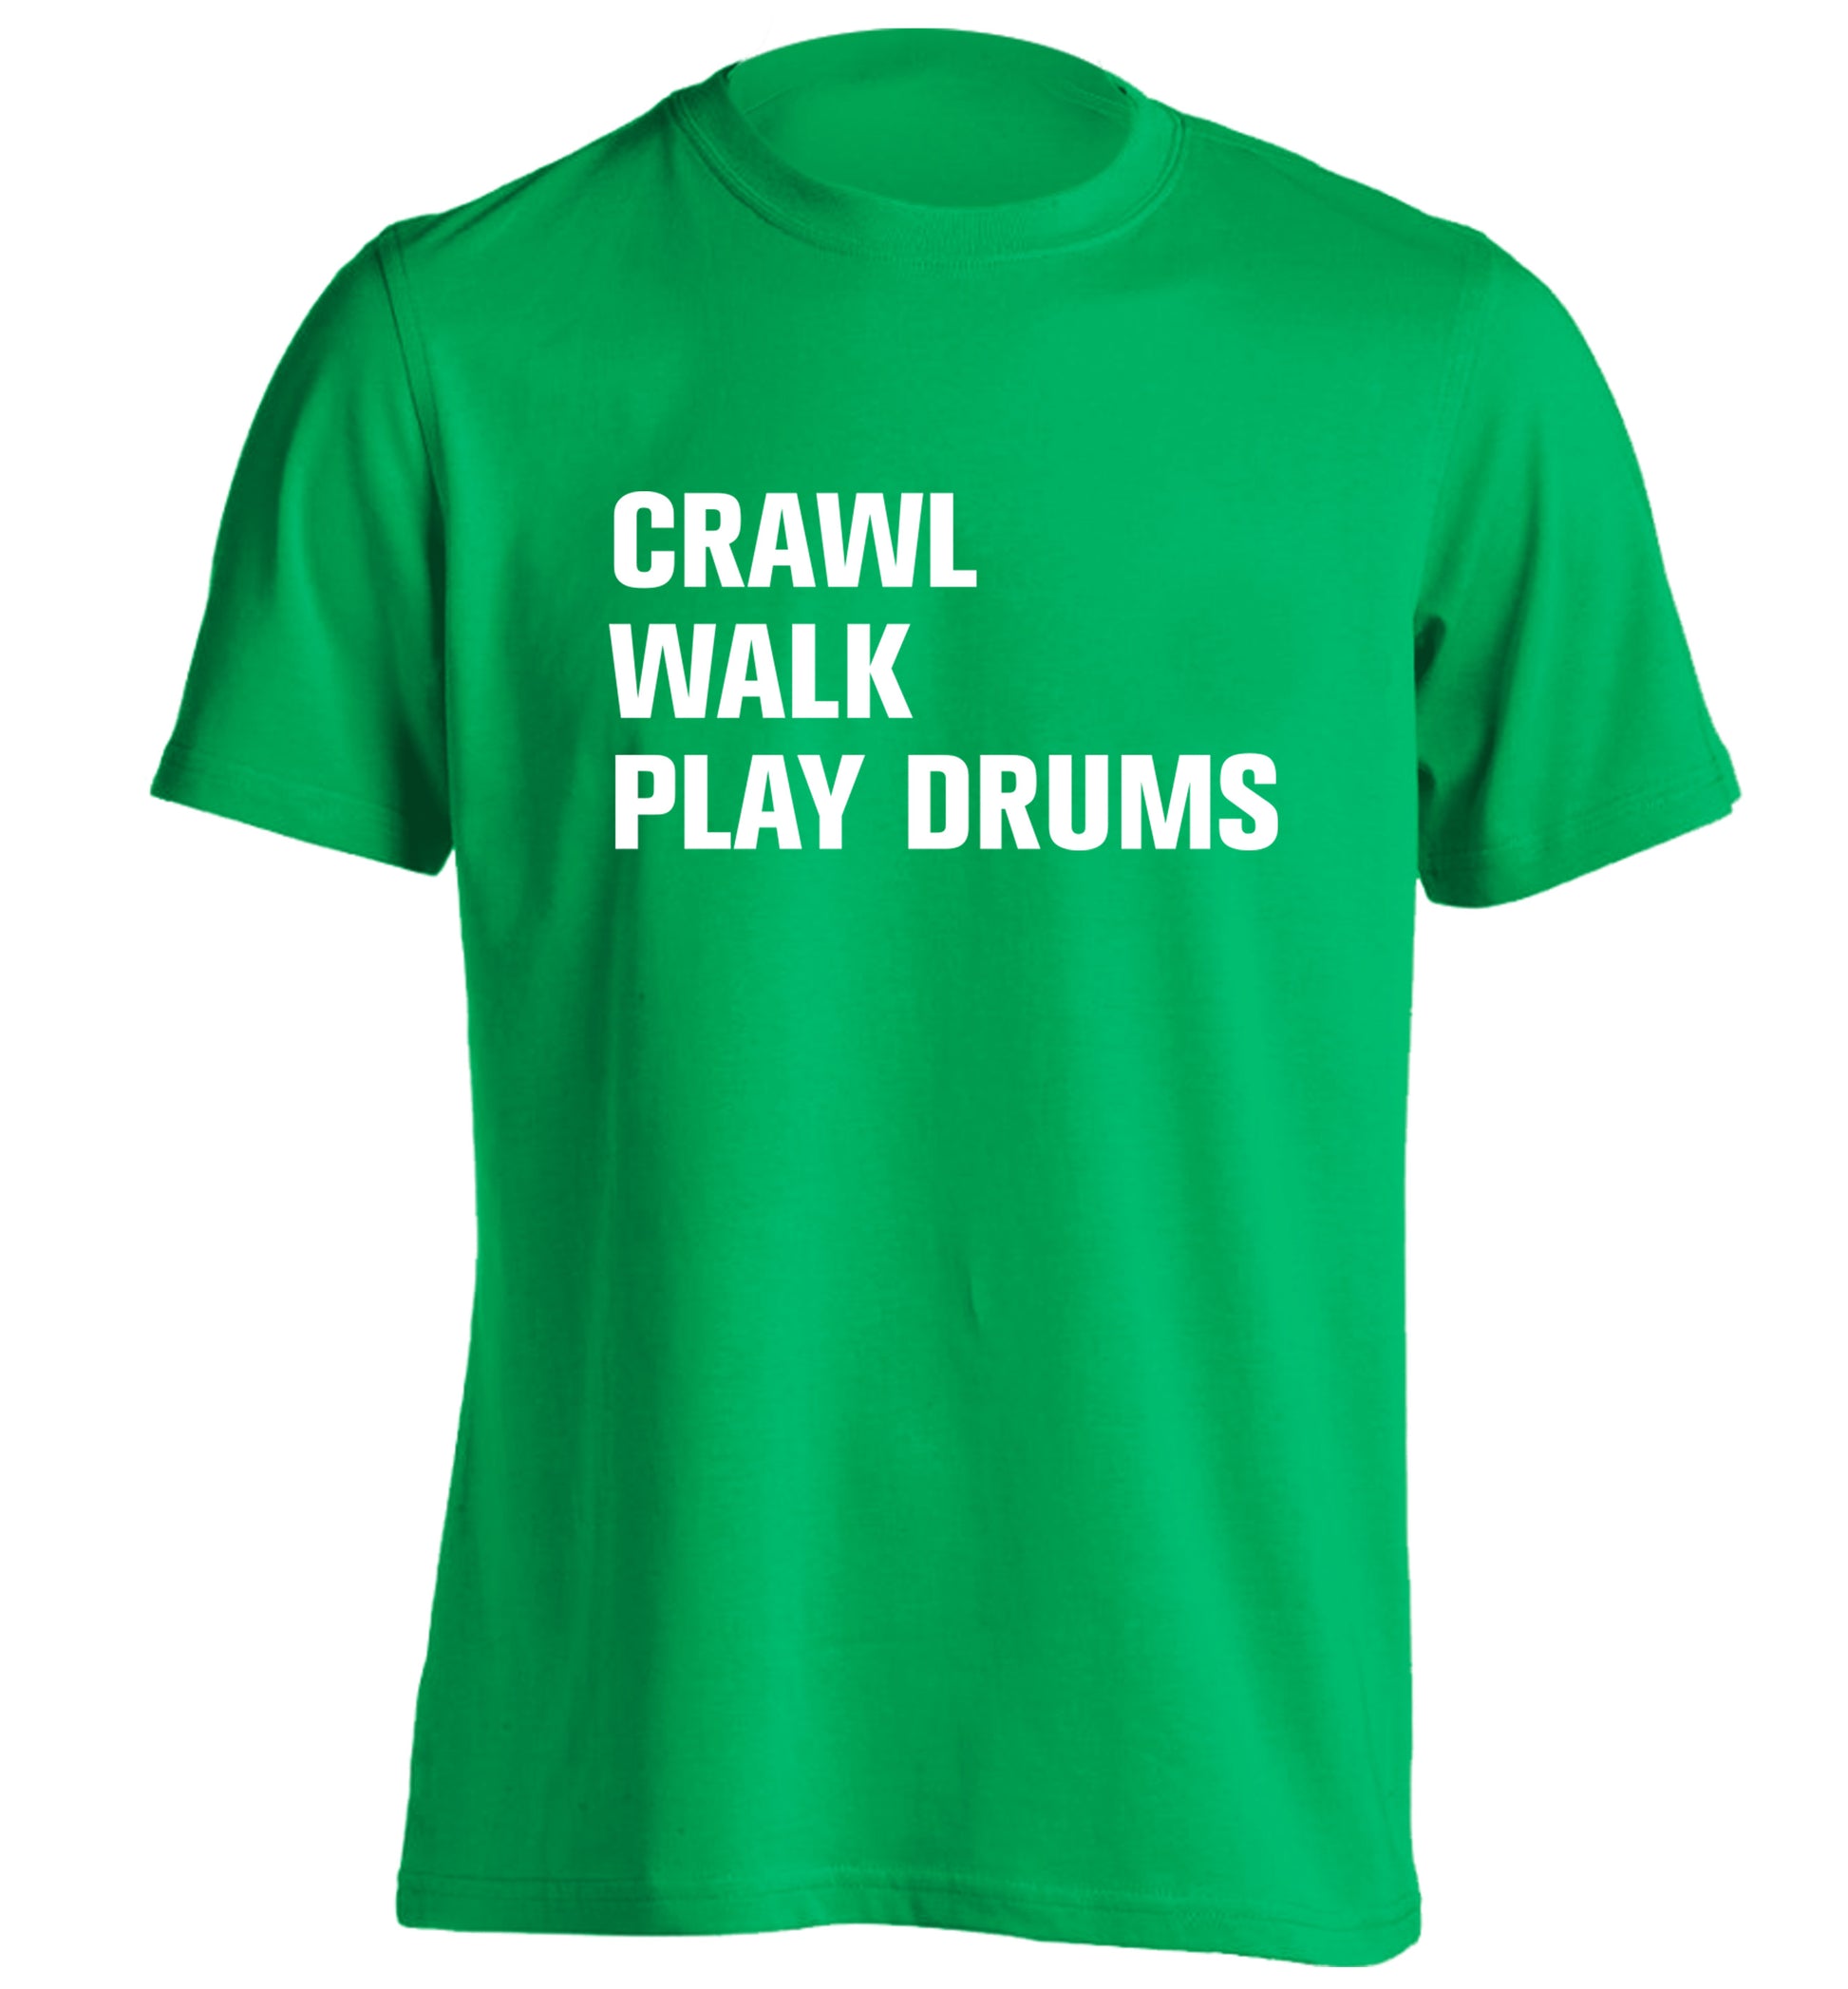 Crawl walk play drums adults unisex green Tshirt 2XL